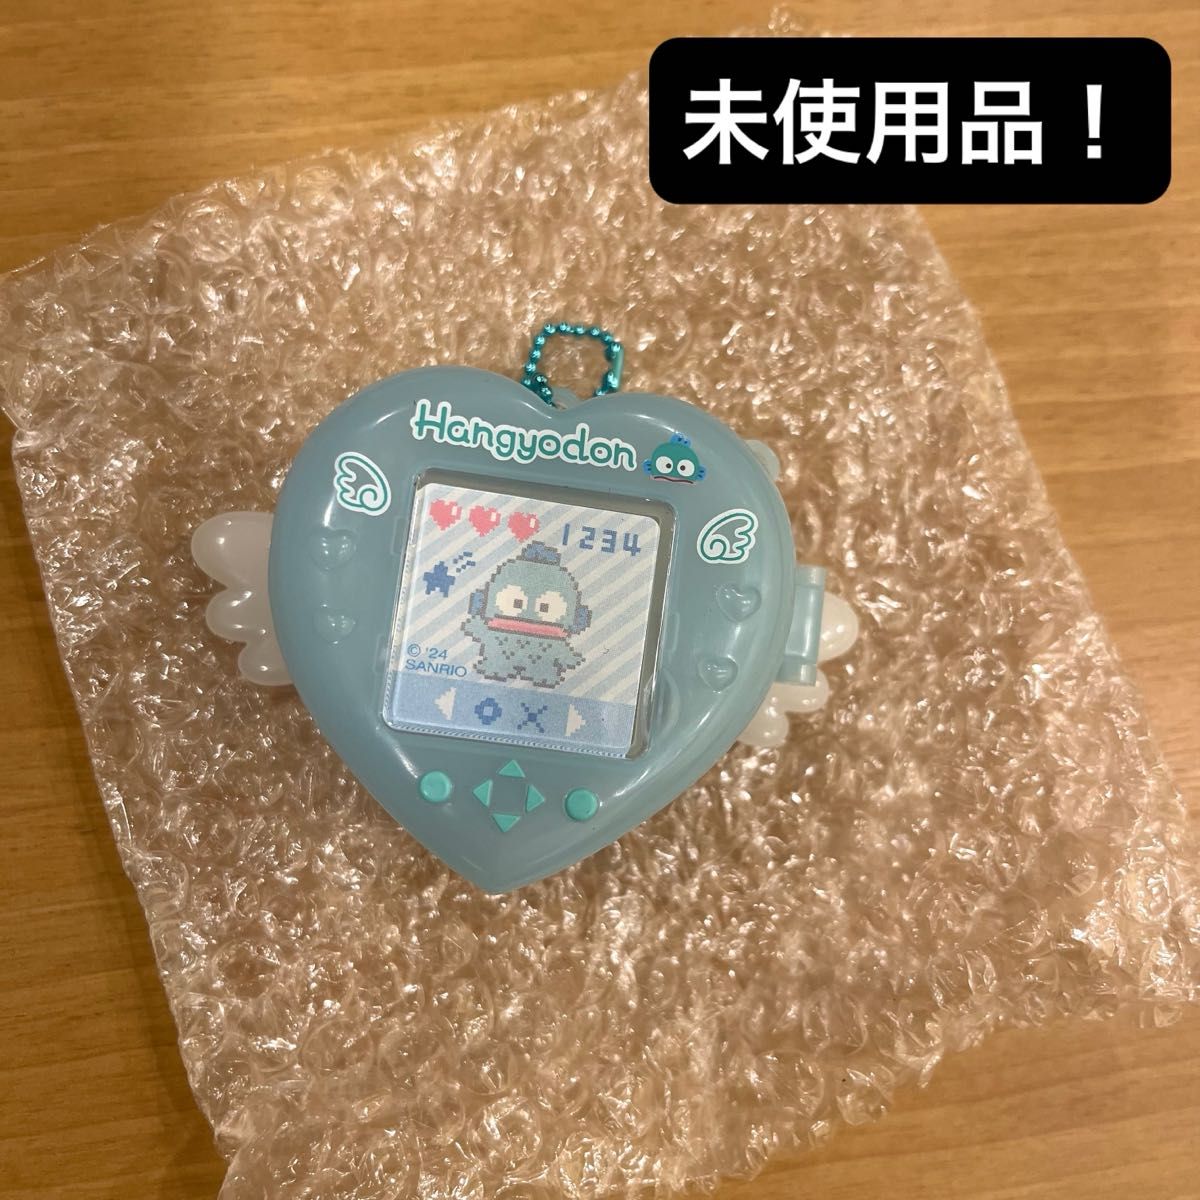 【未使用品】サンリオ シークレットゲーム機風チャーム 水色デイズ ハンギョドン